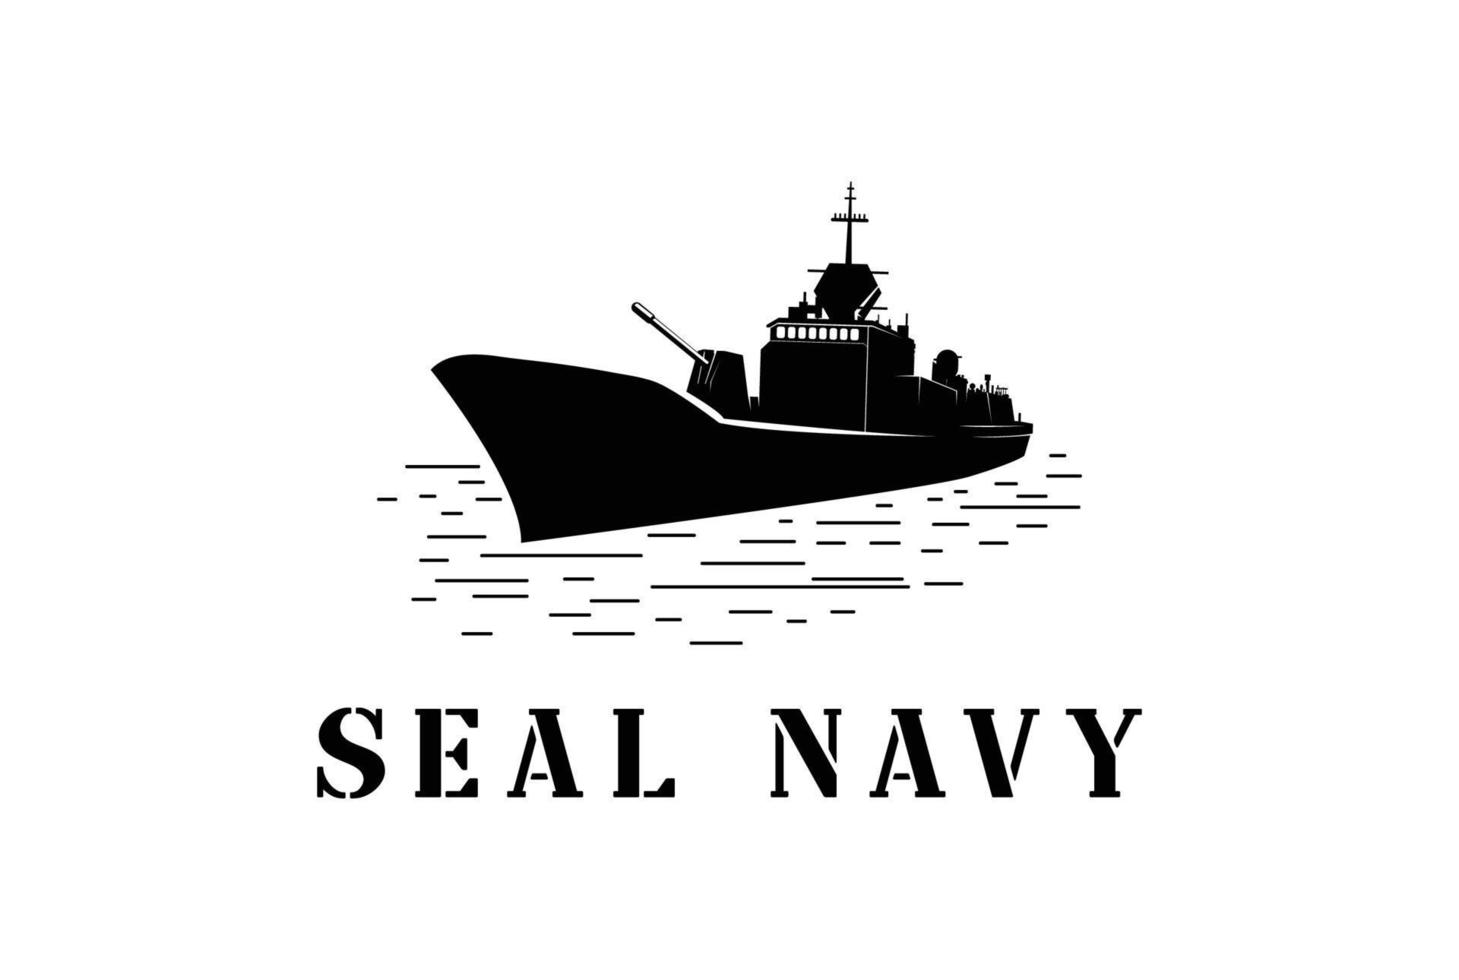 navire de phoque de la marine océanique rétro vintage pour la création de logo de soldat de l'armée militaire vecteur